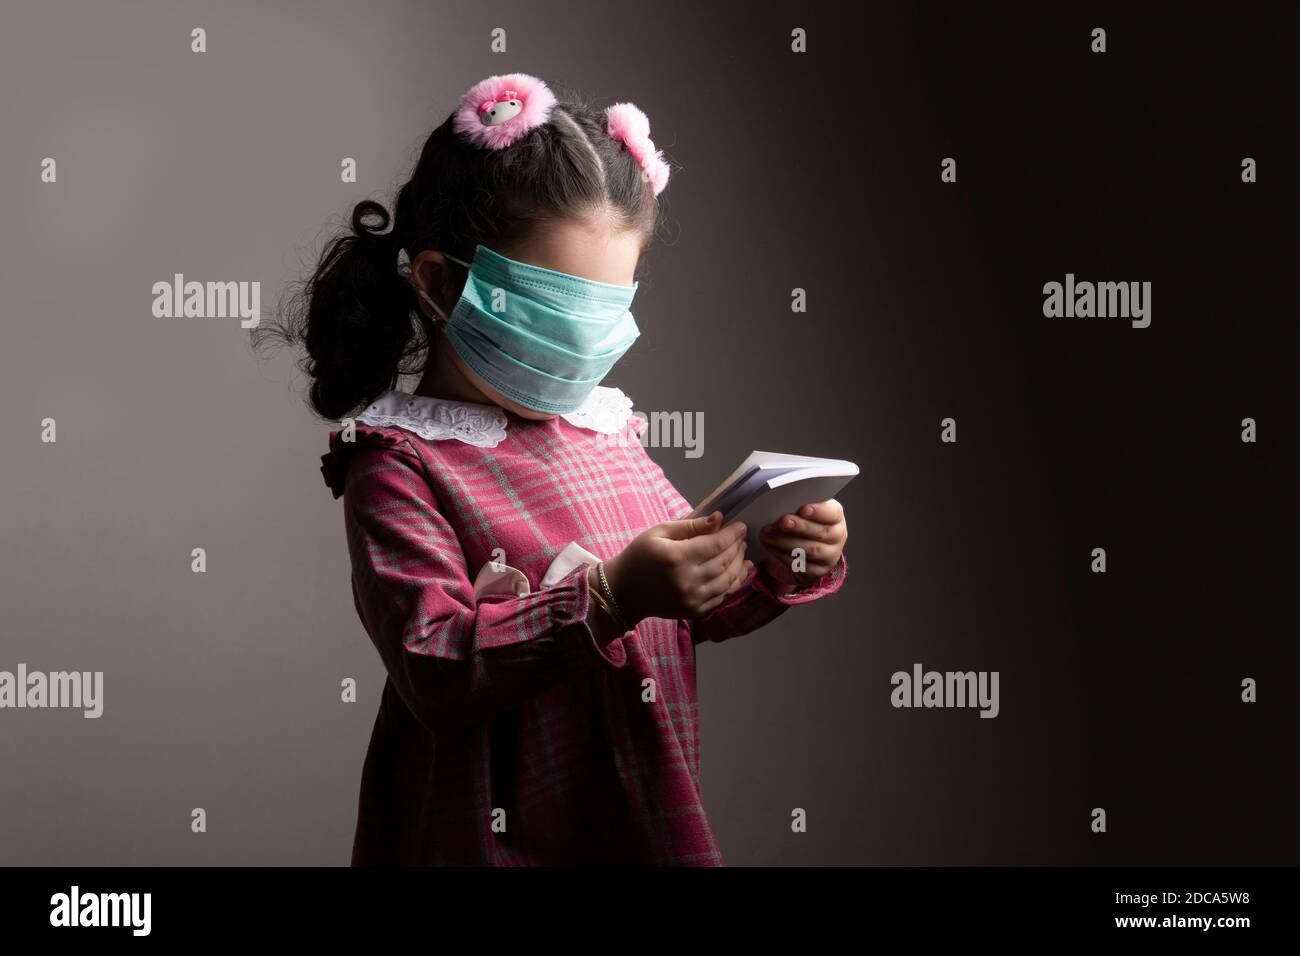 Bedecktes Gesicht eines kleinen Mädchens mit Schutzkrankenhausmaske beim Studium eines Buches, Anonymität und Blindheit Konzept Stockfoto